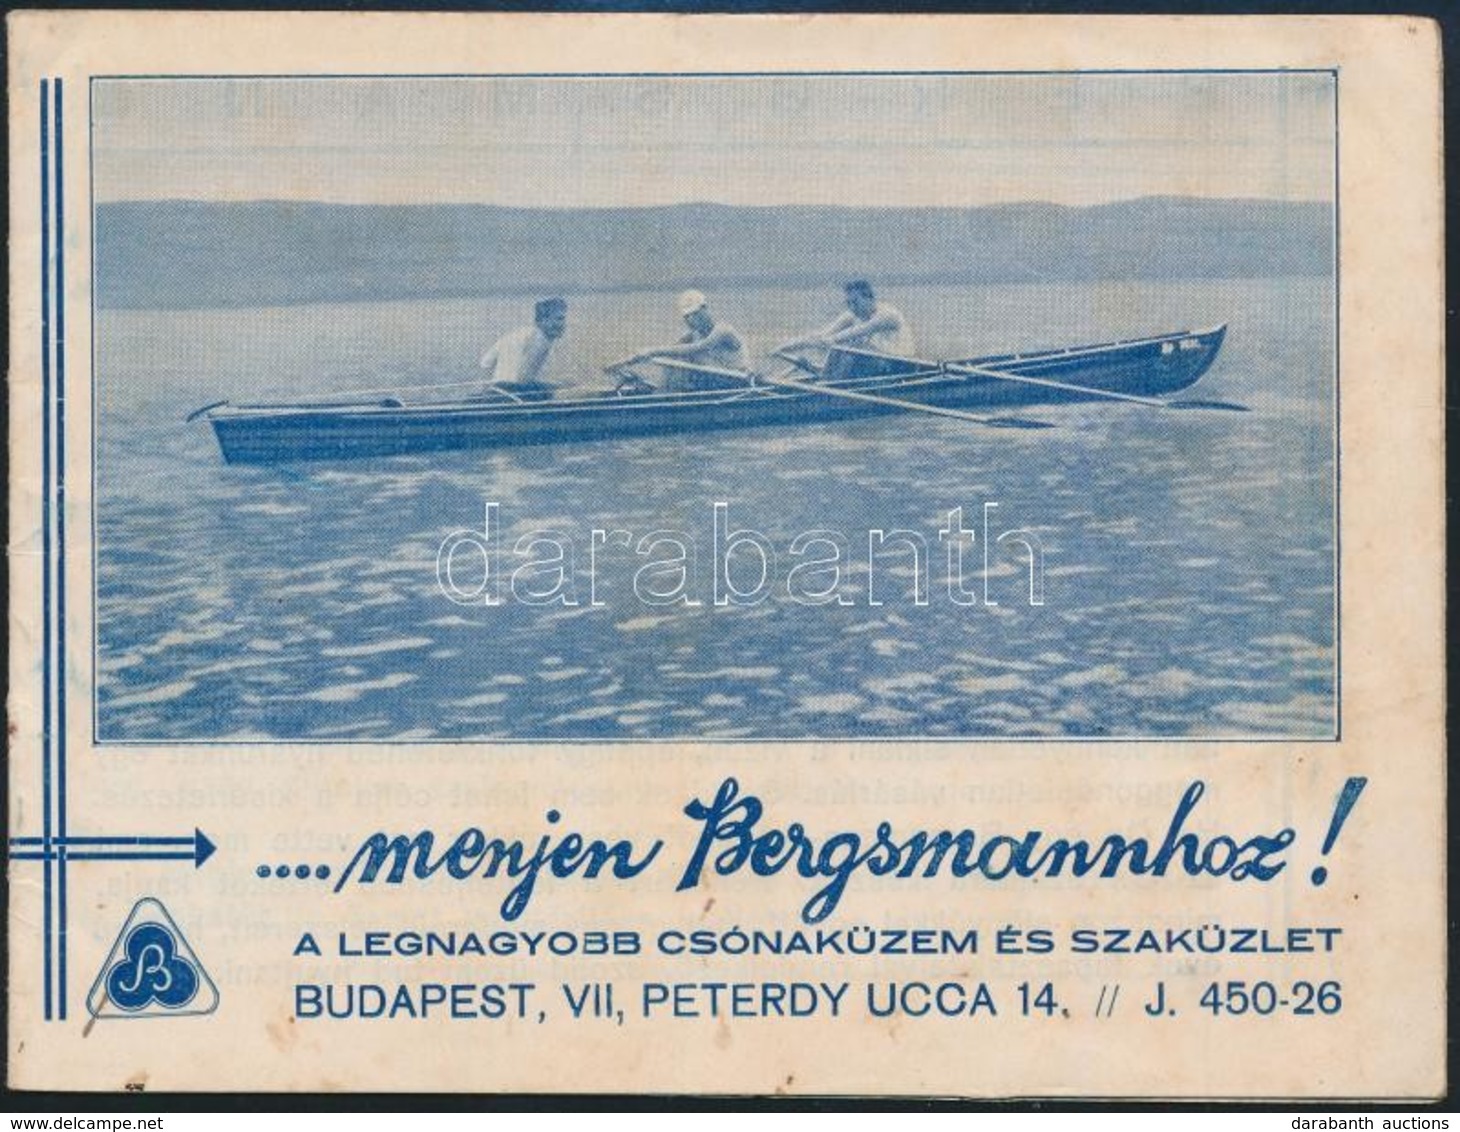 Bergsmann Csónaküzem és Szaküzlet árjegyzék - Reclame